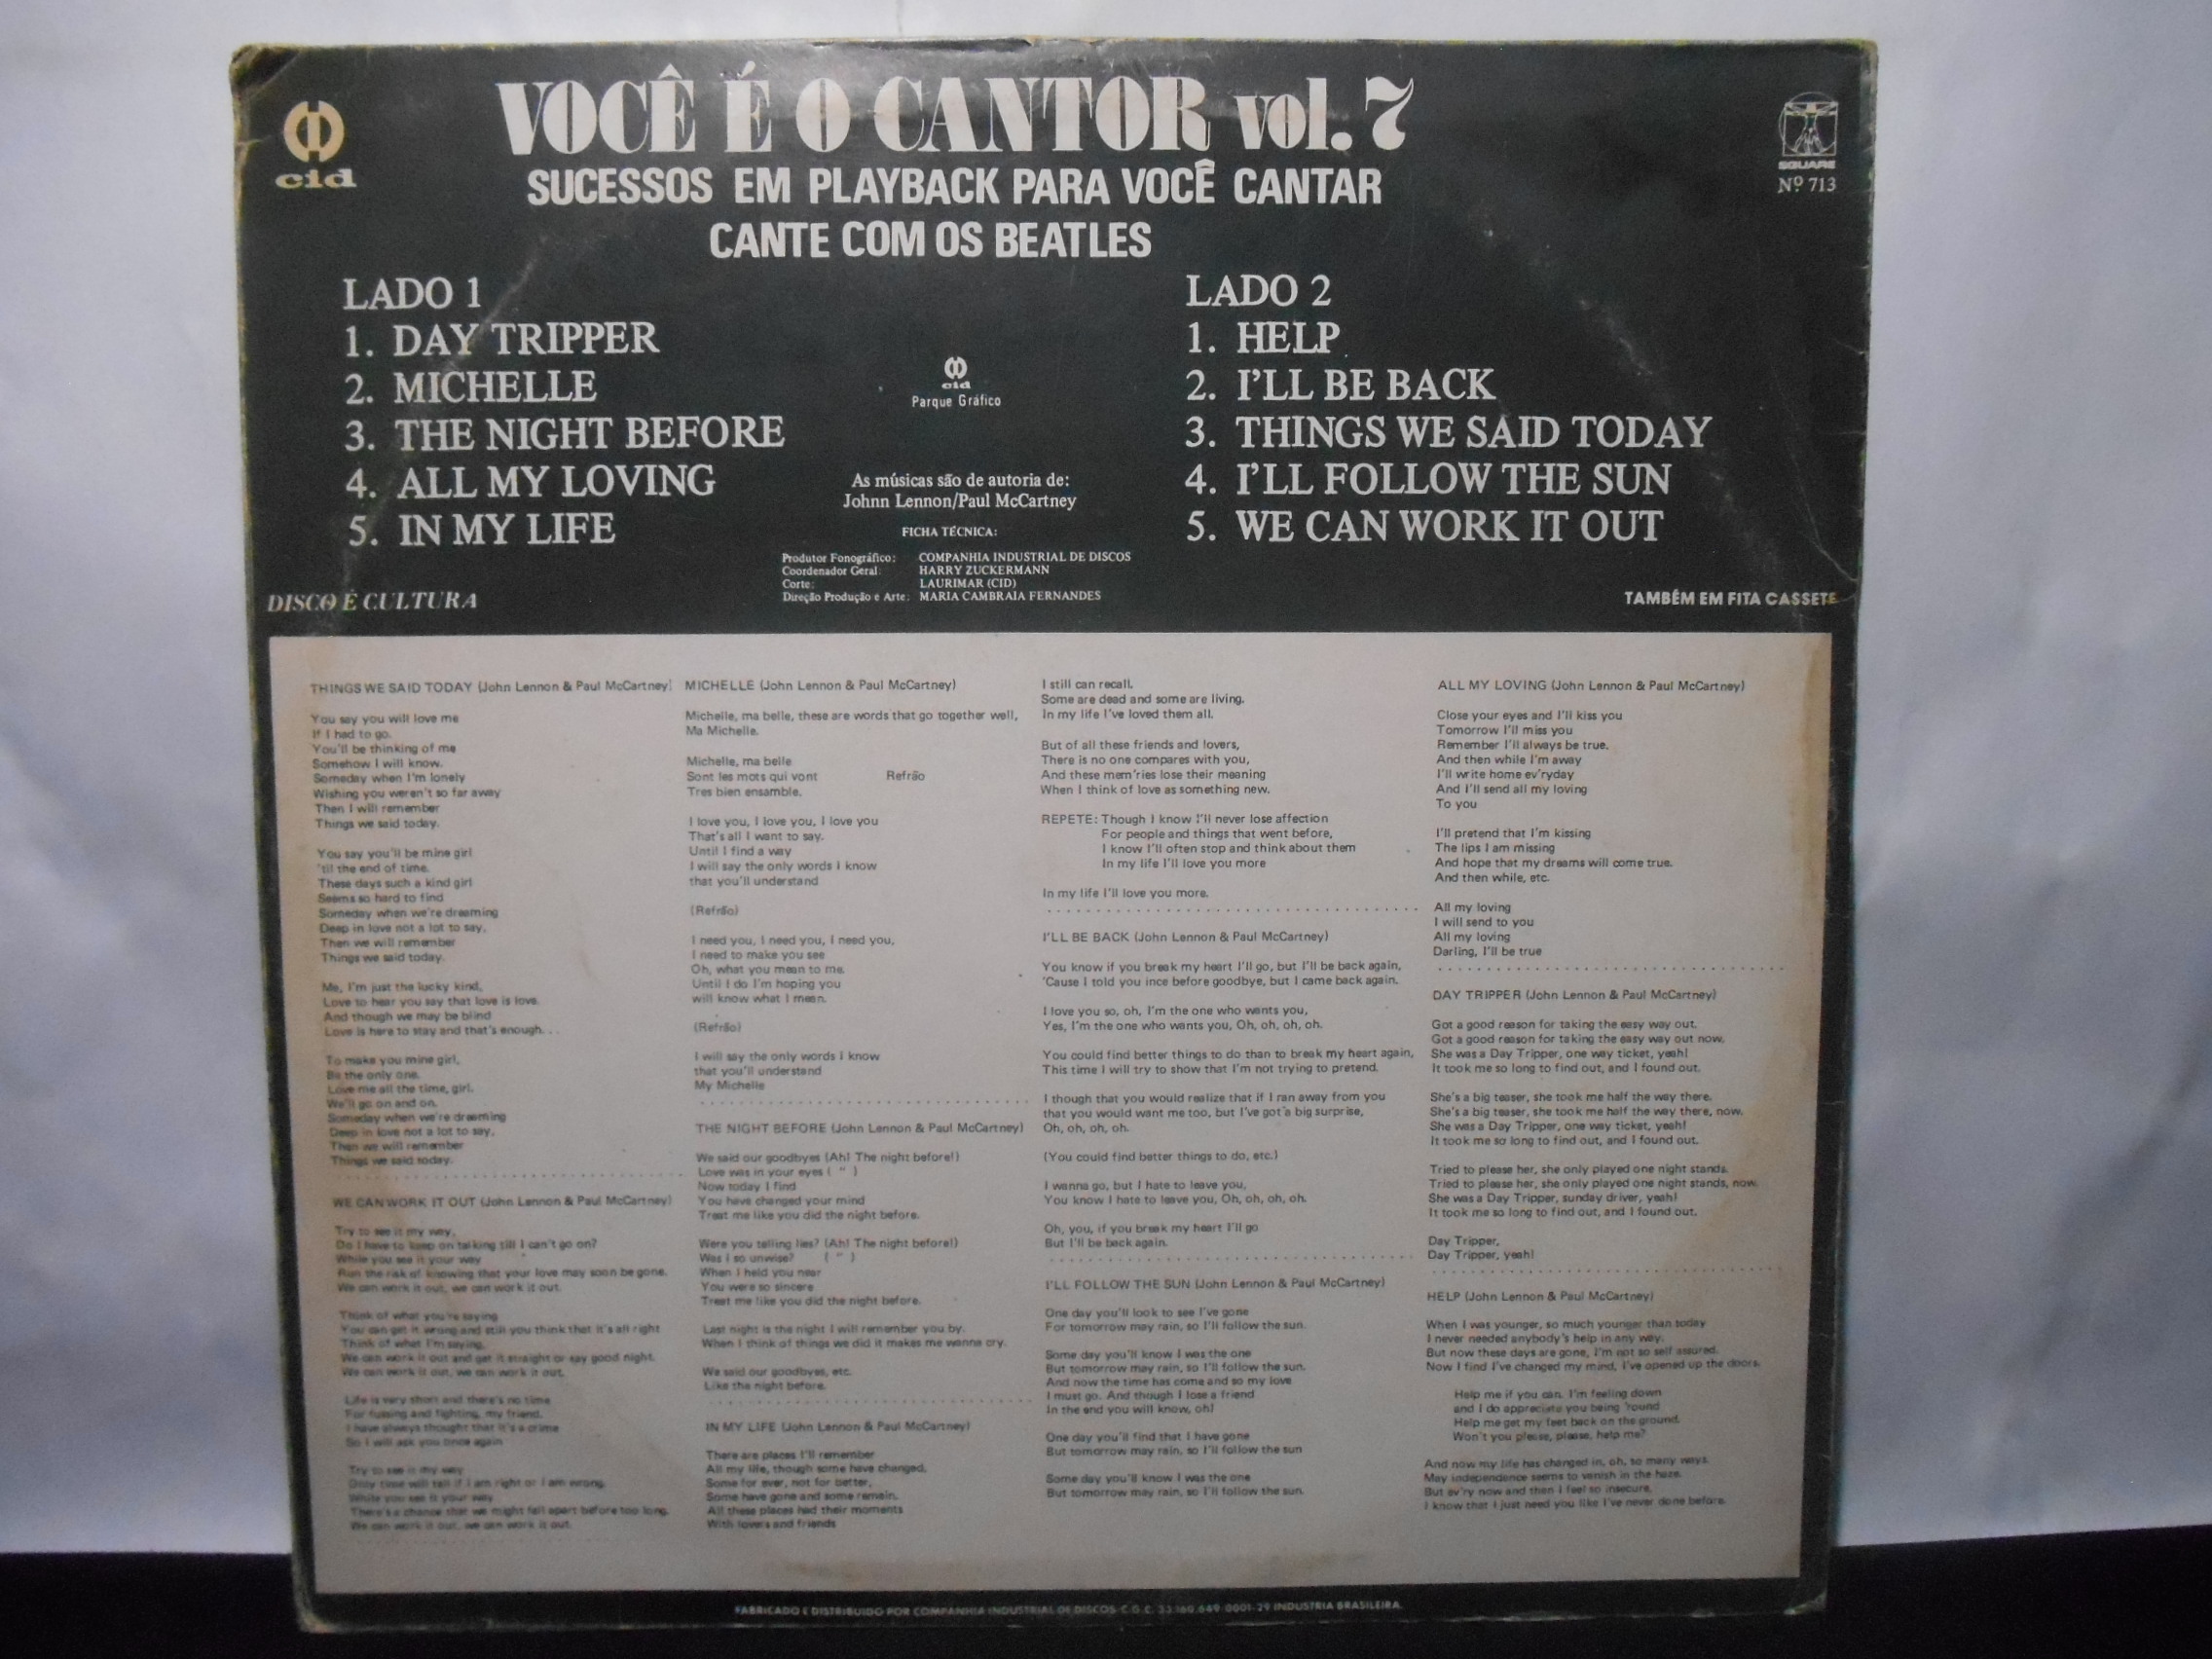 Vinil - Beatles the - Você é o Cantor Sucessos em Playback Para Você Cantar Vol 7